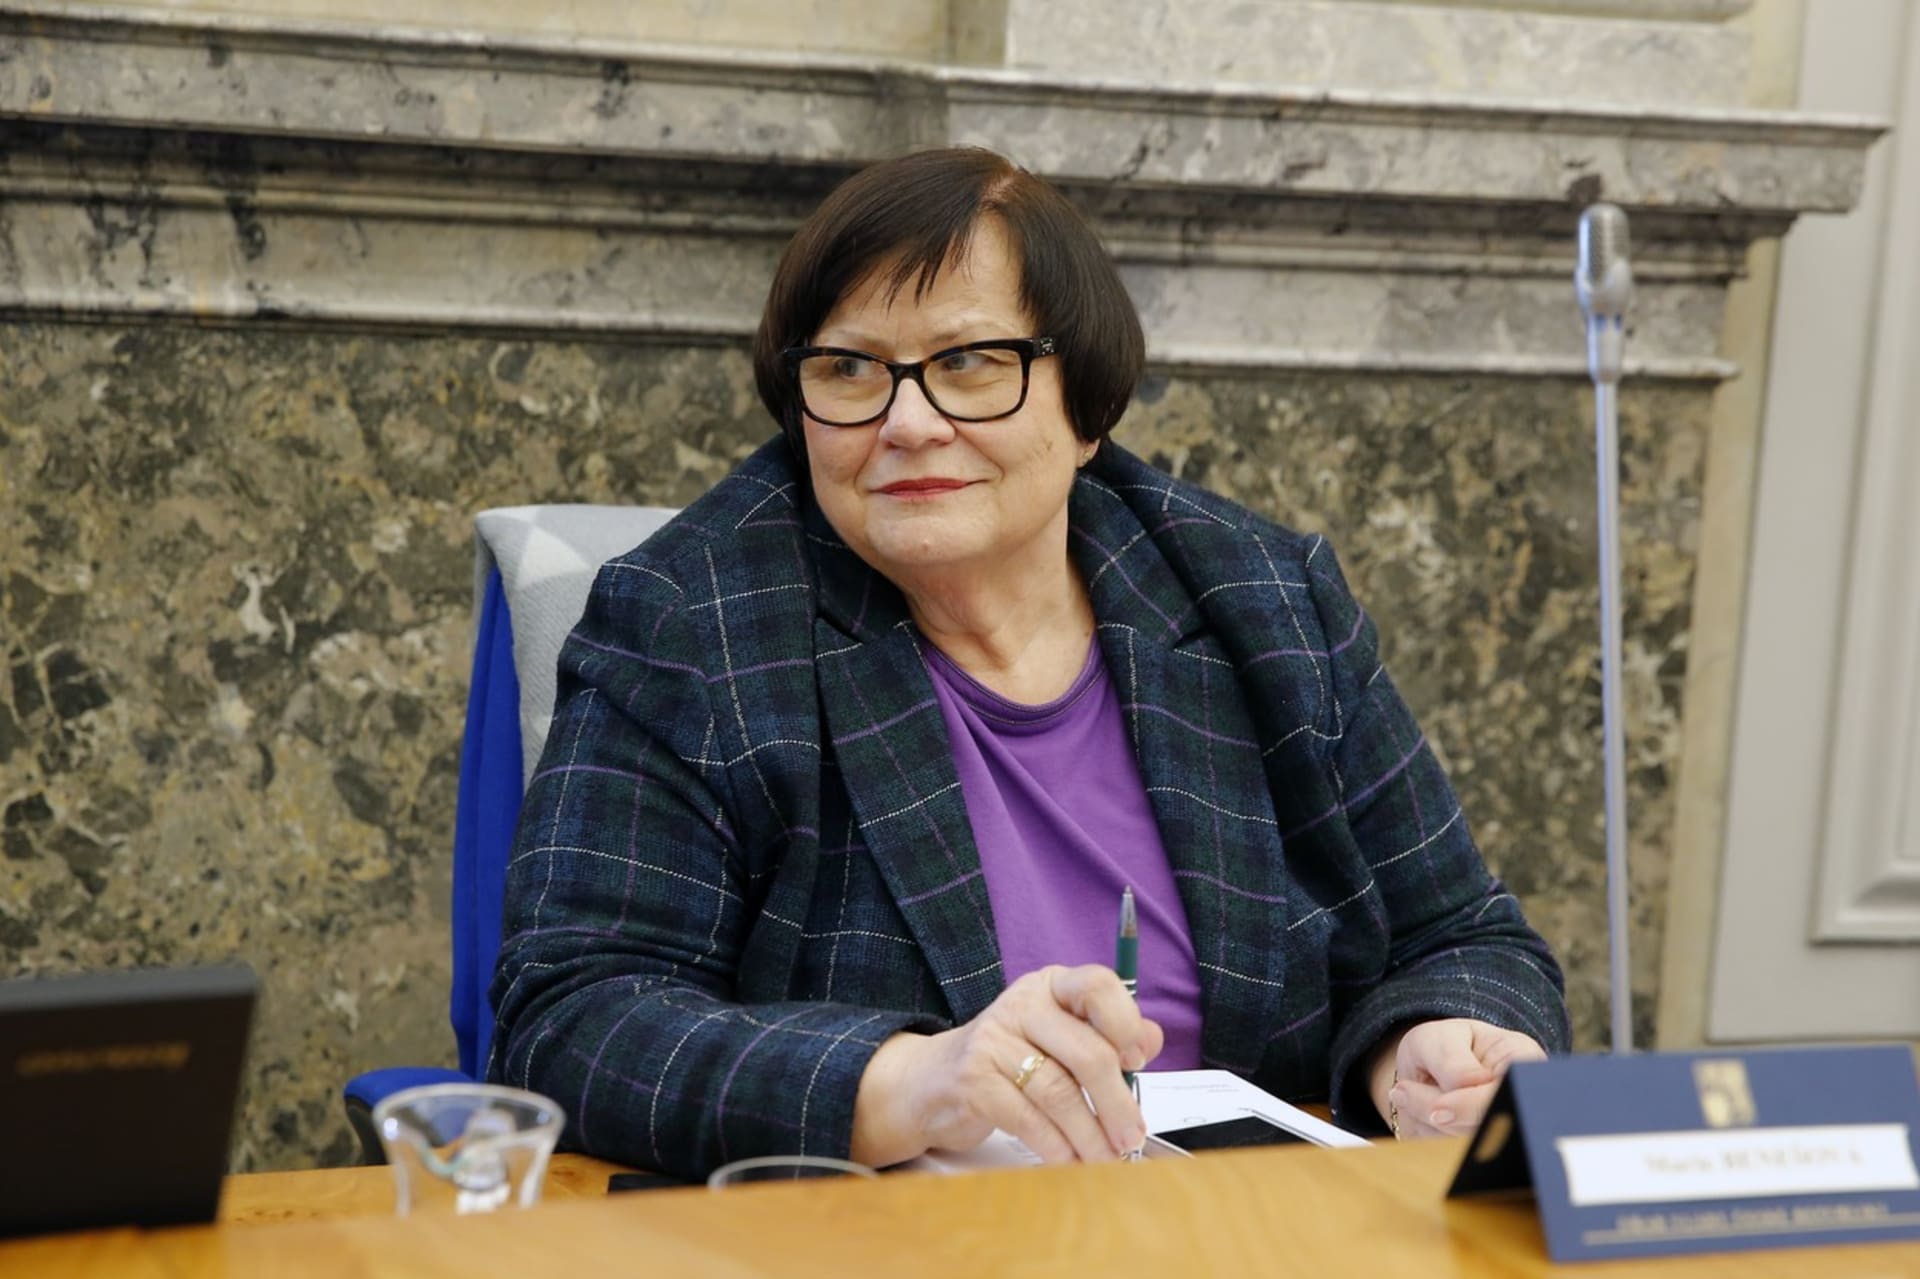 Předkladatelem diskutované normy je ministerstvo spravedlnosti v čele s ministryní Marií Benešovu (za ANO)